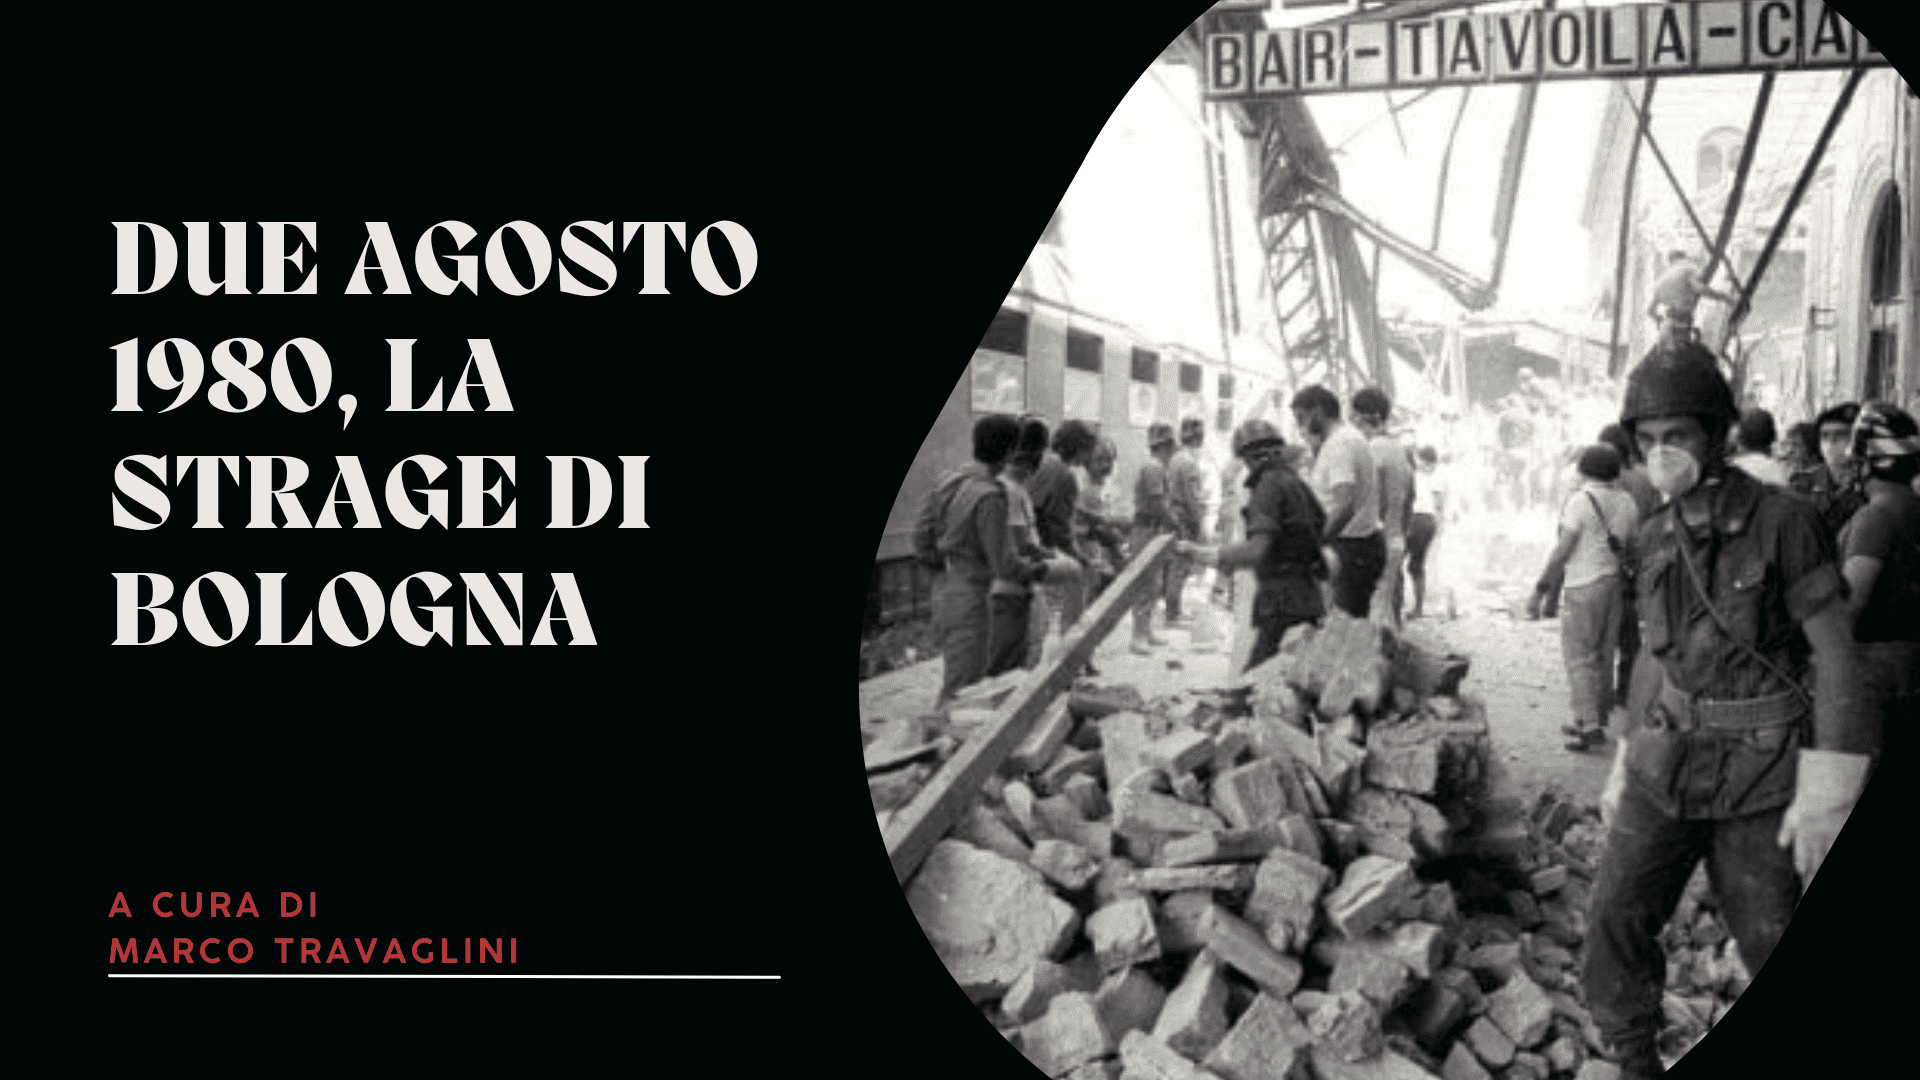 Due agosto 1980, la strage di Bologna